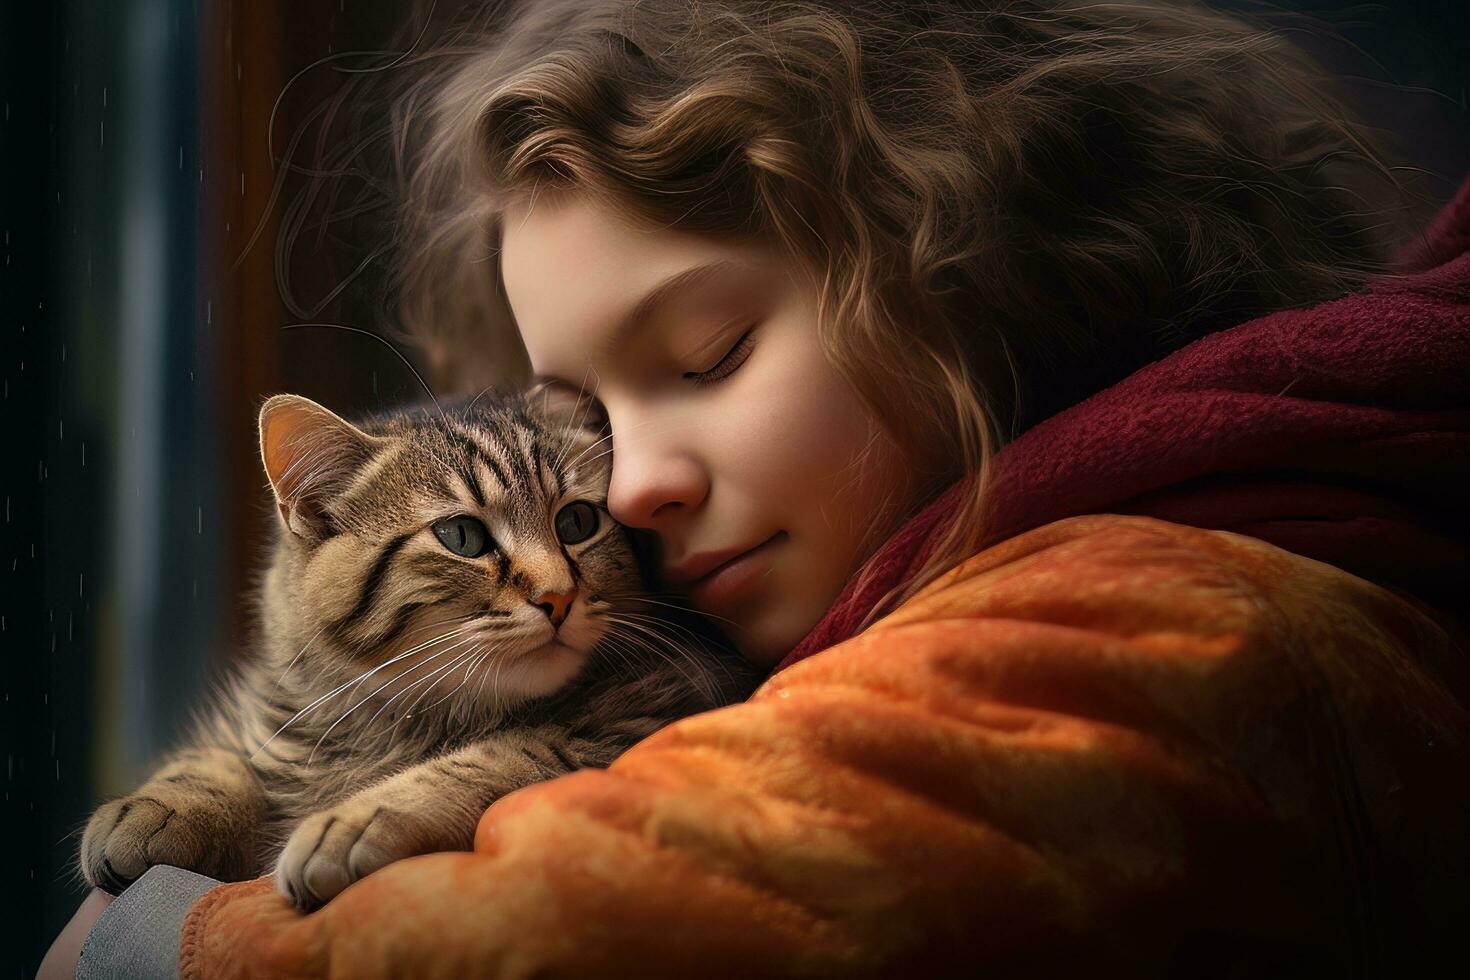 liten flicka kramas henne katt med värma ljus bakgrund, unge kramar en herrelös katt till förmedla en känsla av kärlek. foto